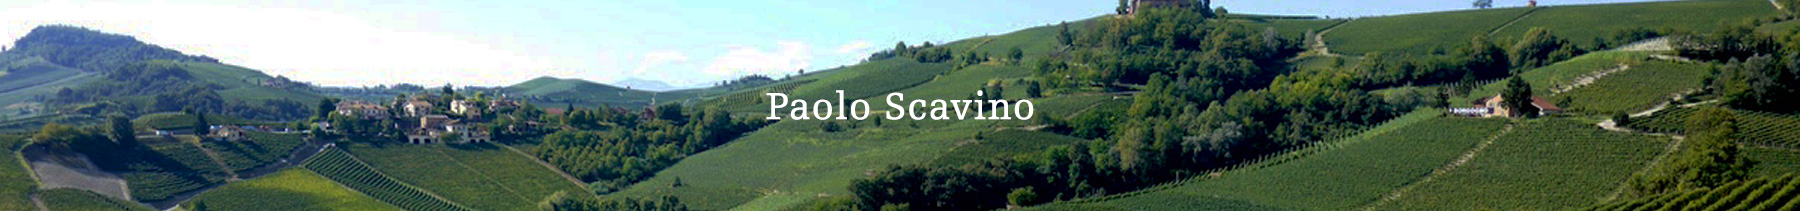 Paolo Scavino